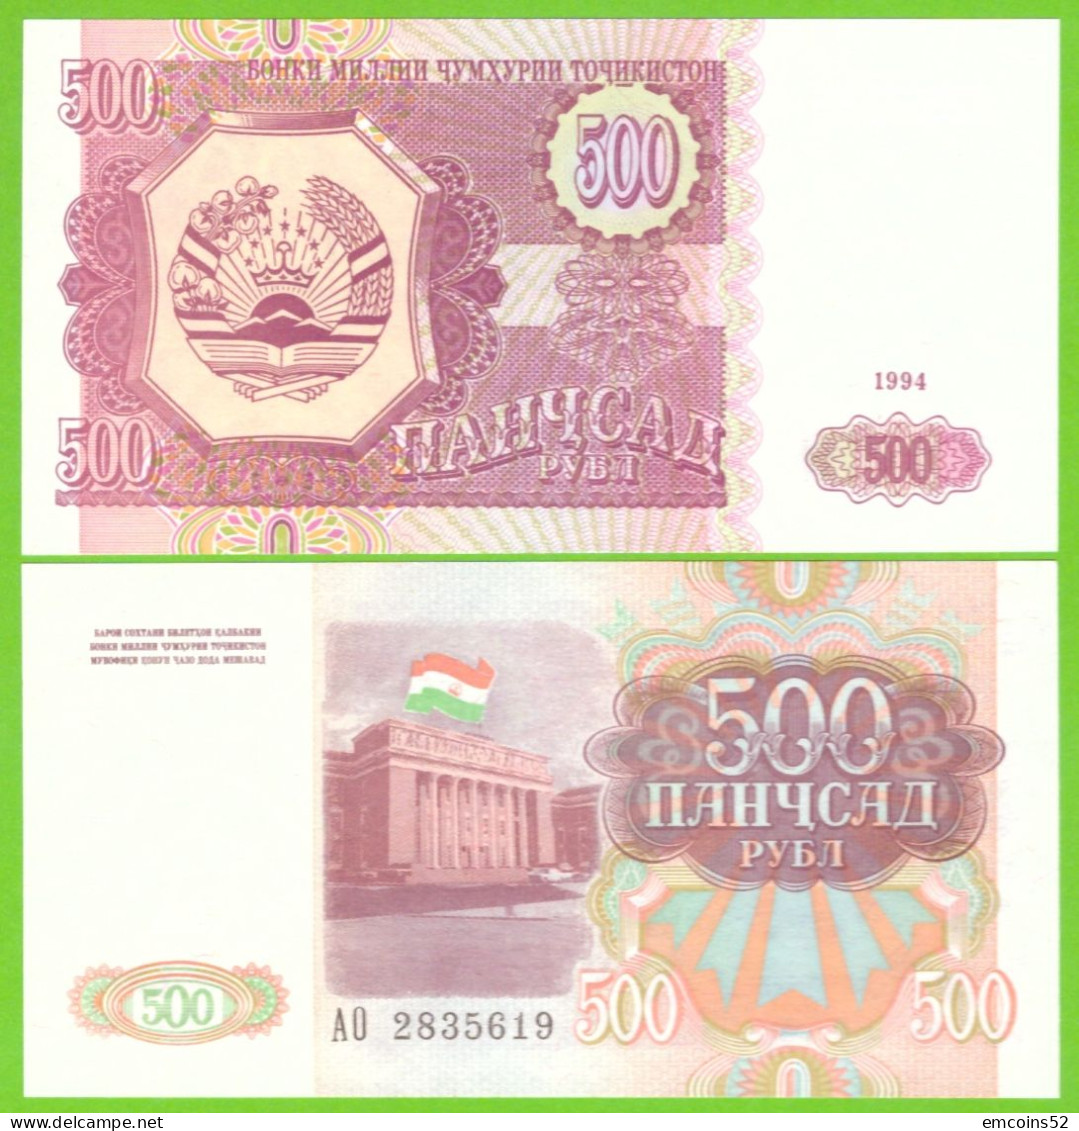 TAJIKISTAN 500 RUBL 1994 P-8 UNC - Tadjikistan